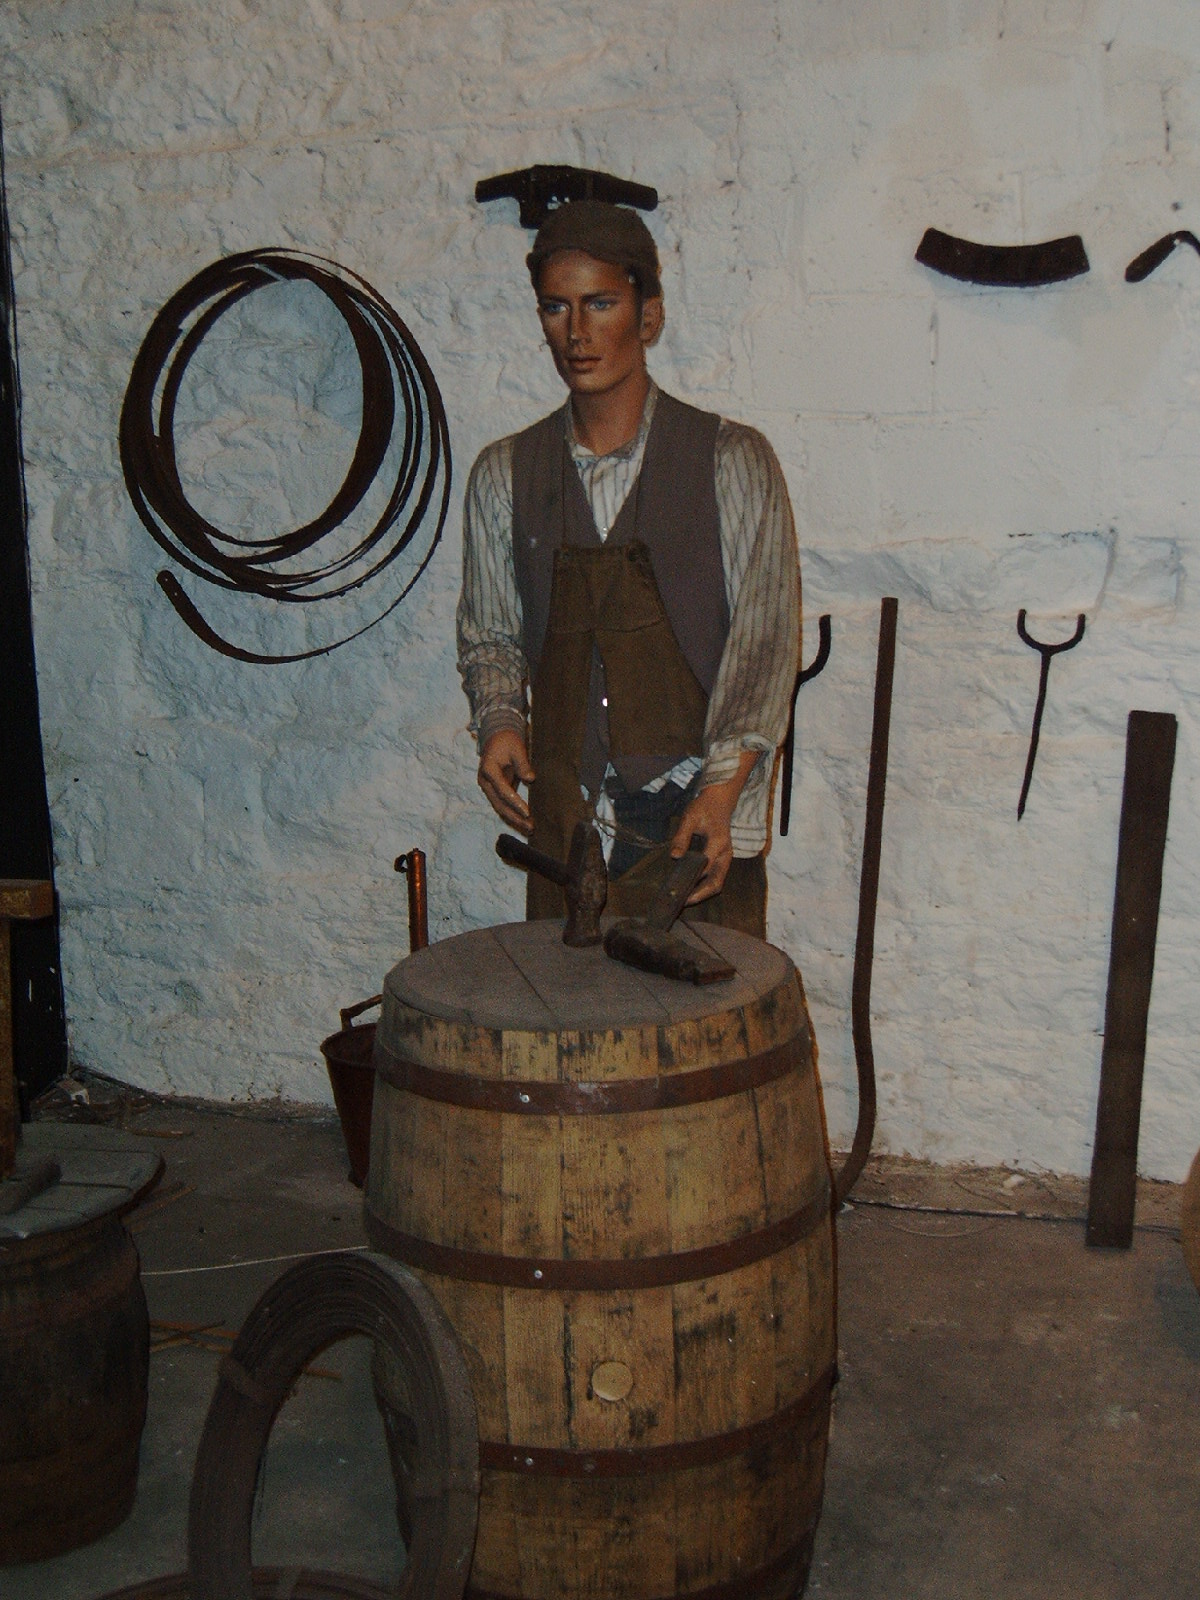 Ausstellung Jameson
Bild: The Whisky Man